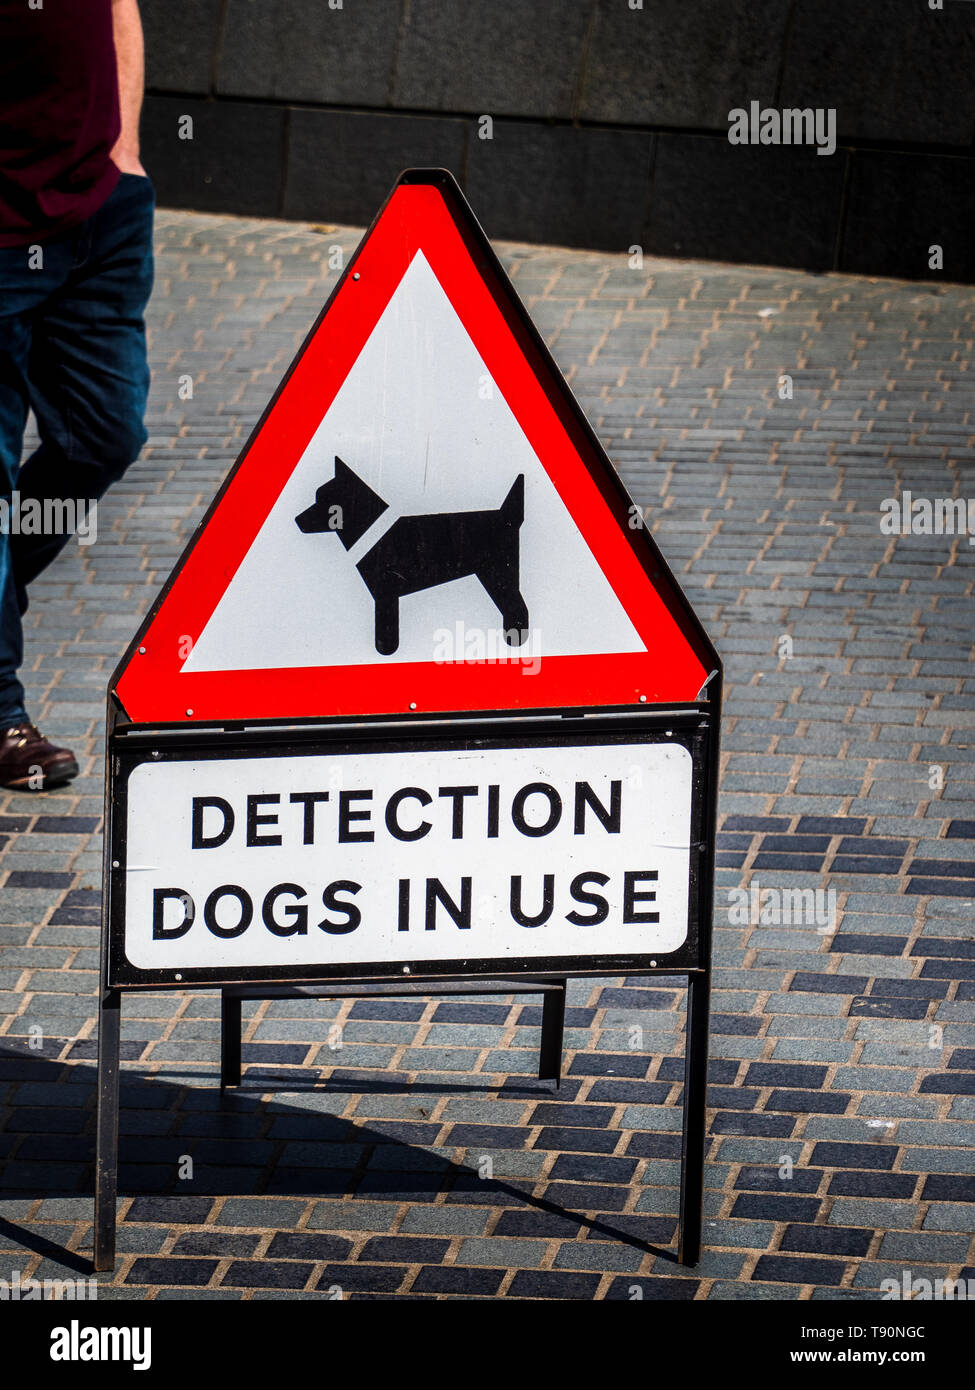 Erkennung Hunde im Einsatz Zeichen-Warnung über den Einsatz von Hunden trainiert seinen Geruchssinn zu verwenden Sprengstoffe oder Drogen zu erkennen. Stockfoto